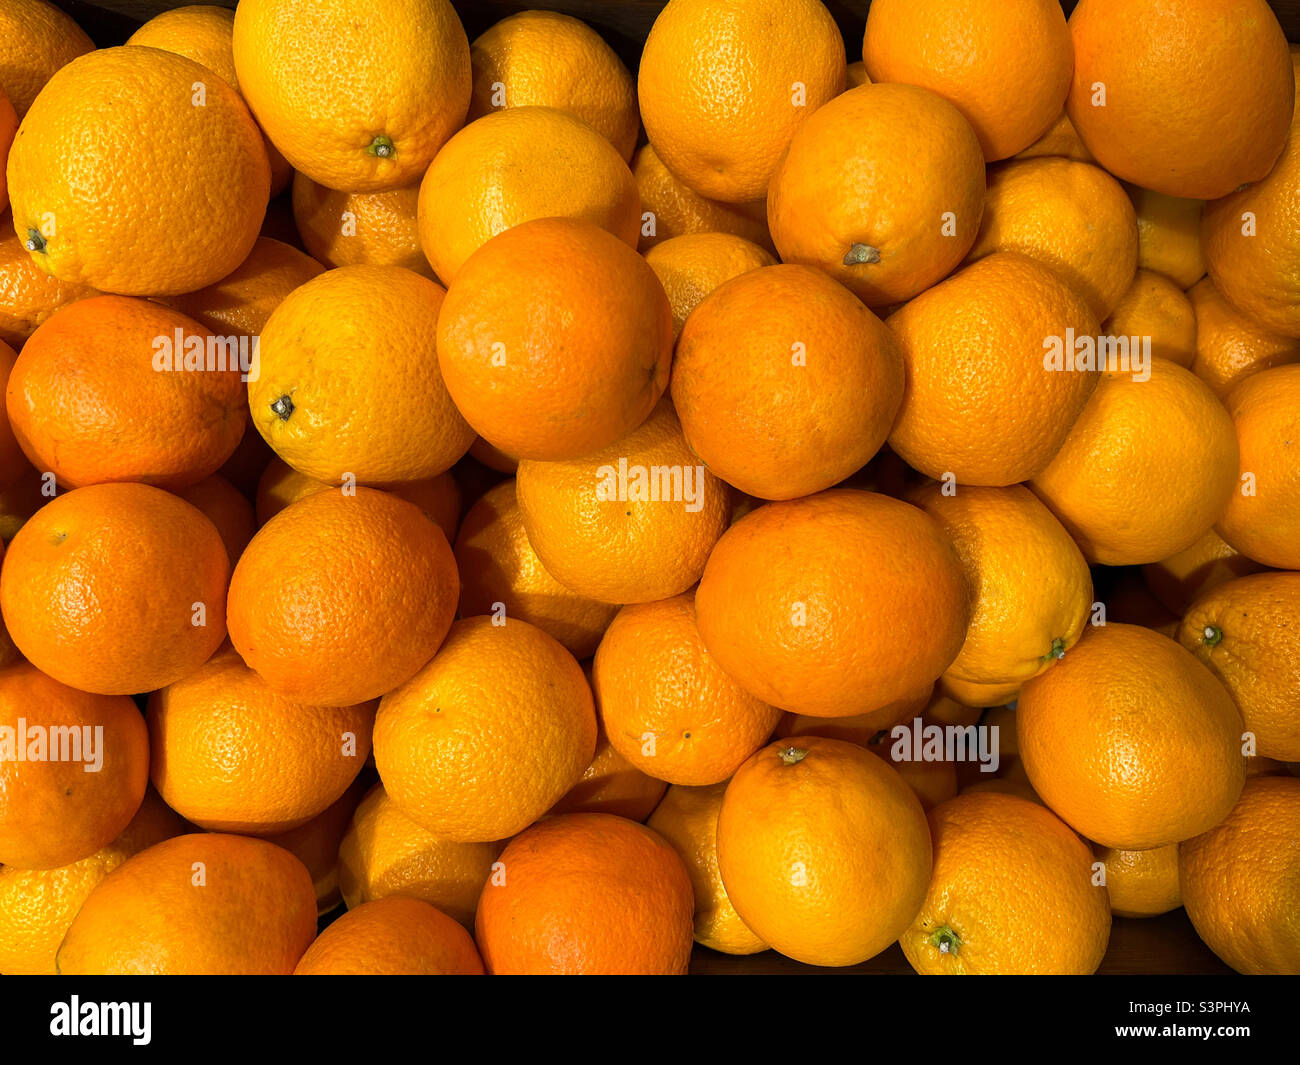 Background of sweet orange oranges or tangerines. Texture of oranges or tangerines. Oranges or tangerines close-up Stock Photo